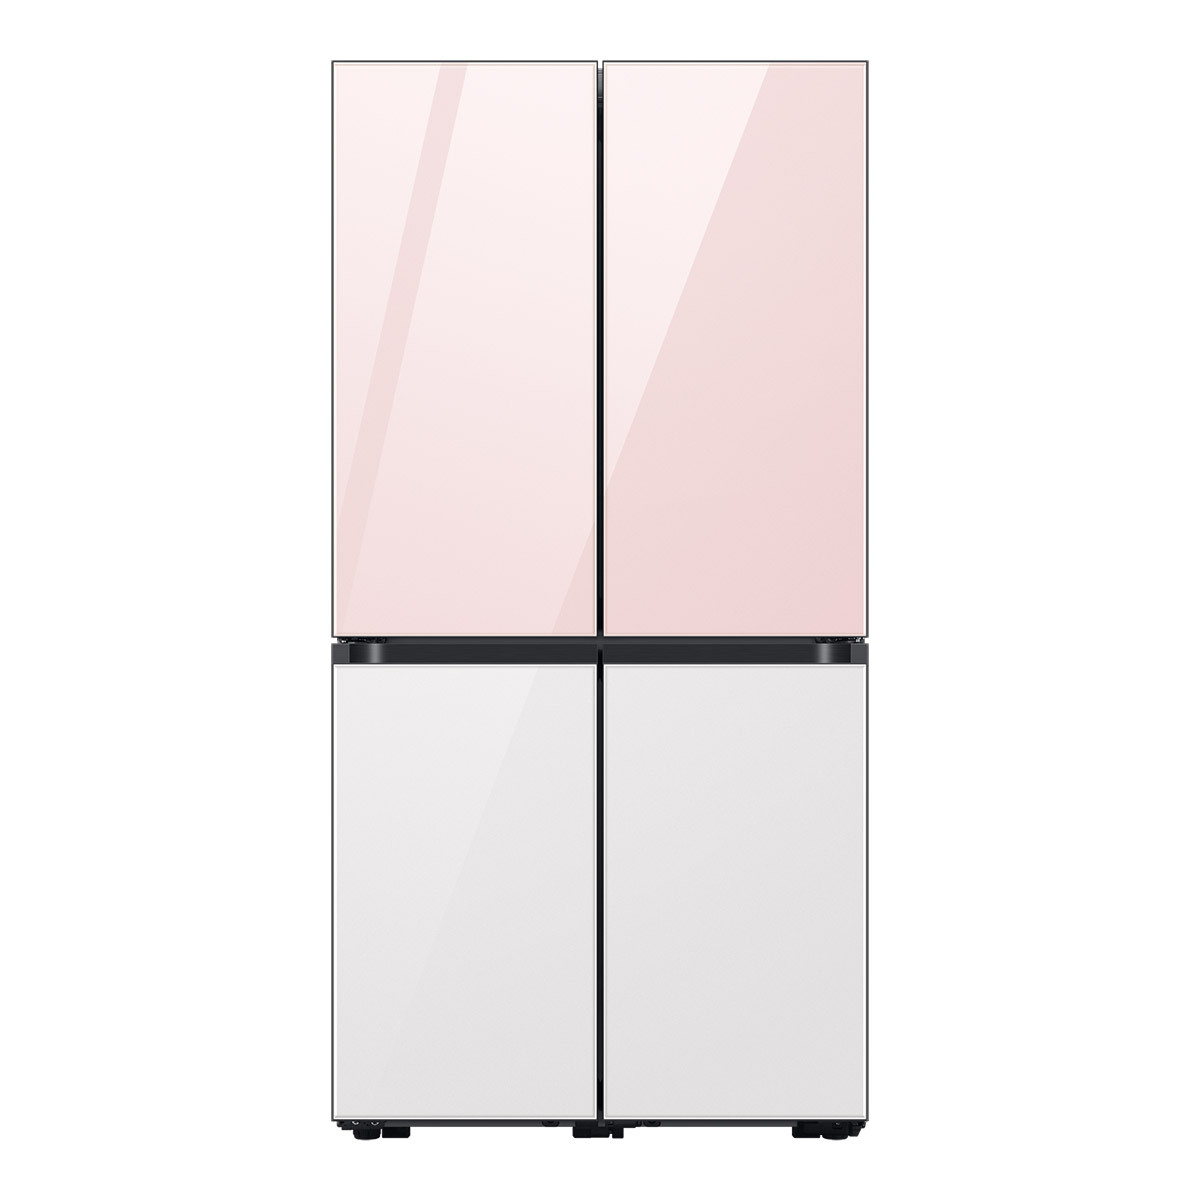 삼성 비스포크 냉장고 870L, 글램핑크화이트